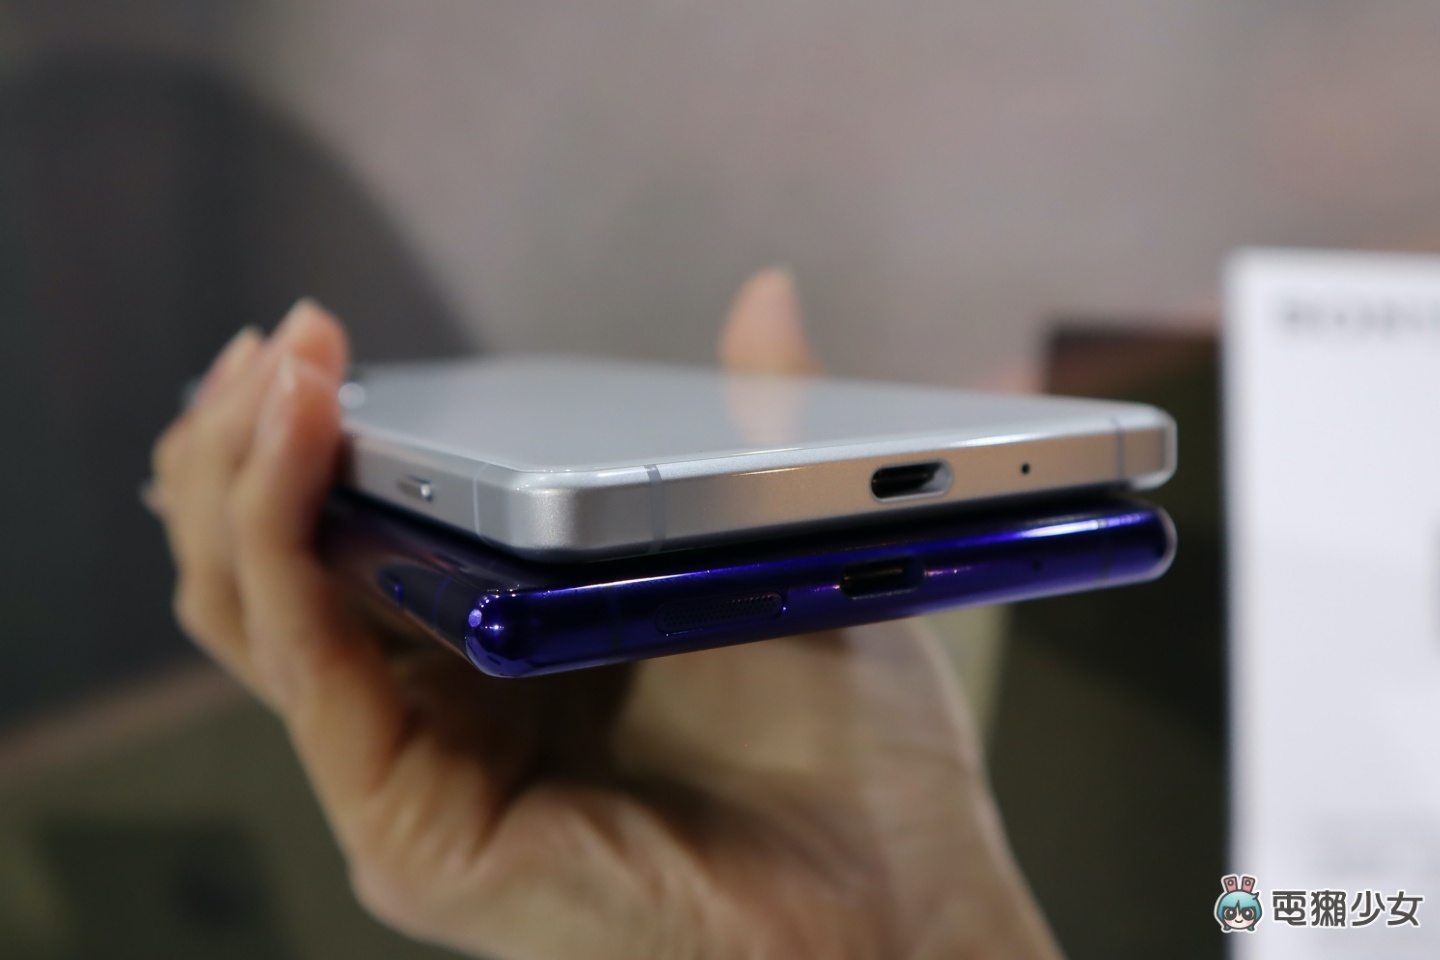 出門｜Sony 首款 5G 旗艦手機『 Xperia 1 II 』在台上市 滿足你影音娛樂的全方位需求 售價 35,990 台幣